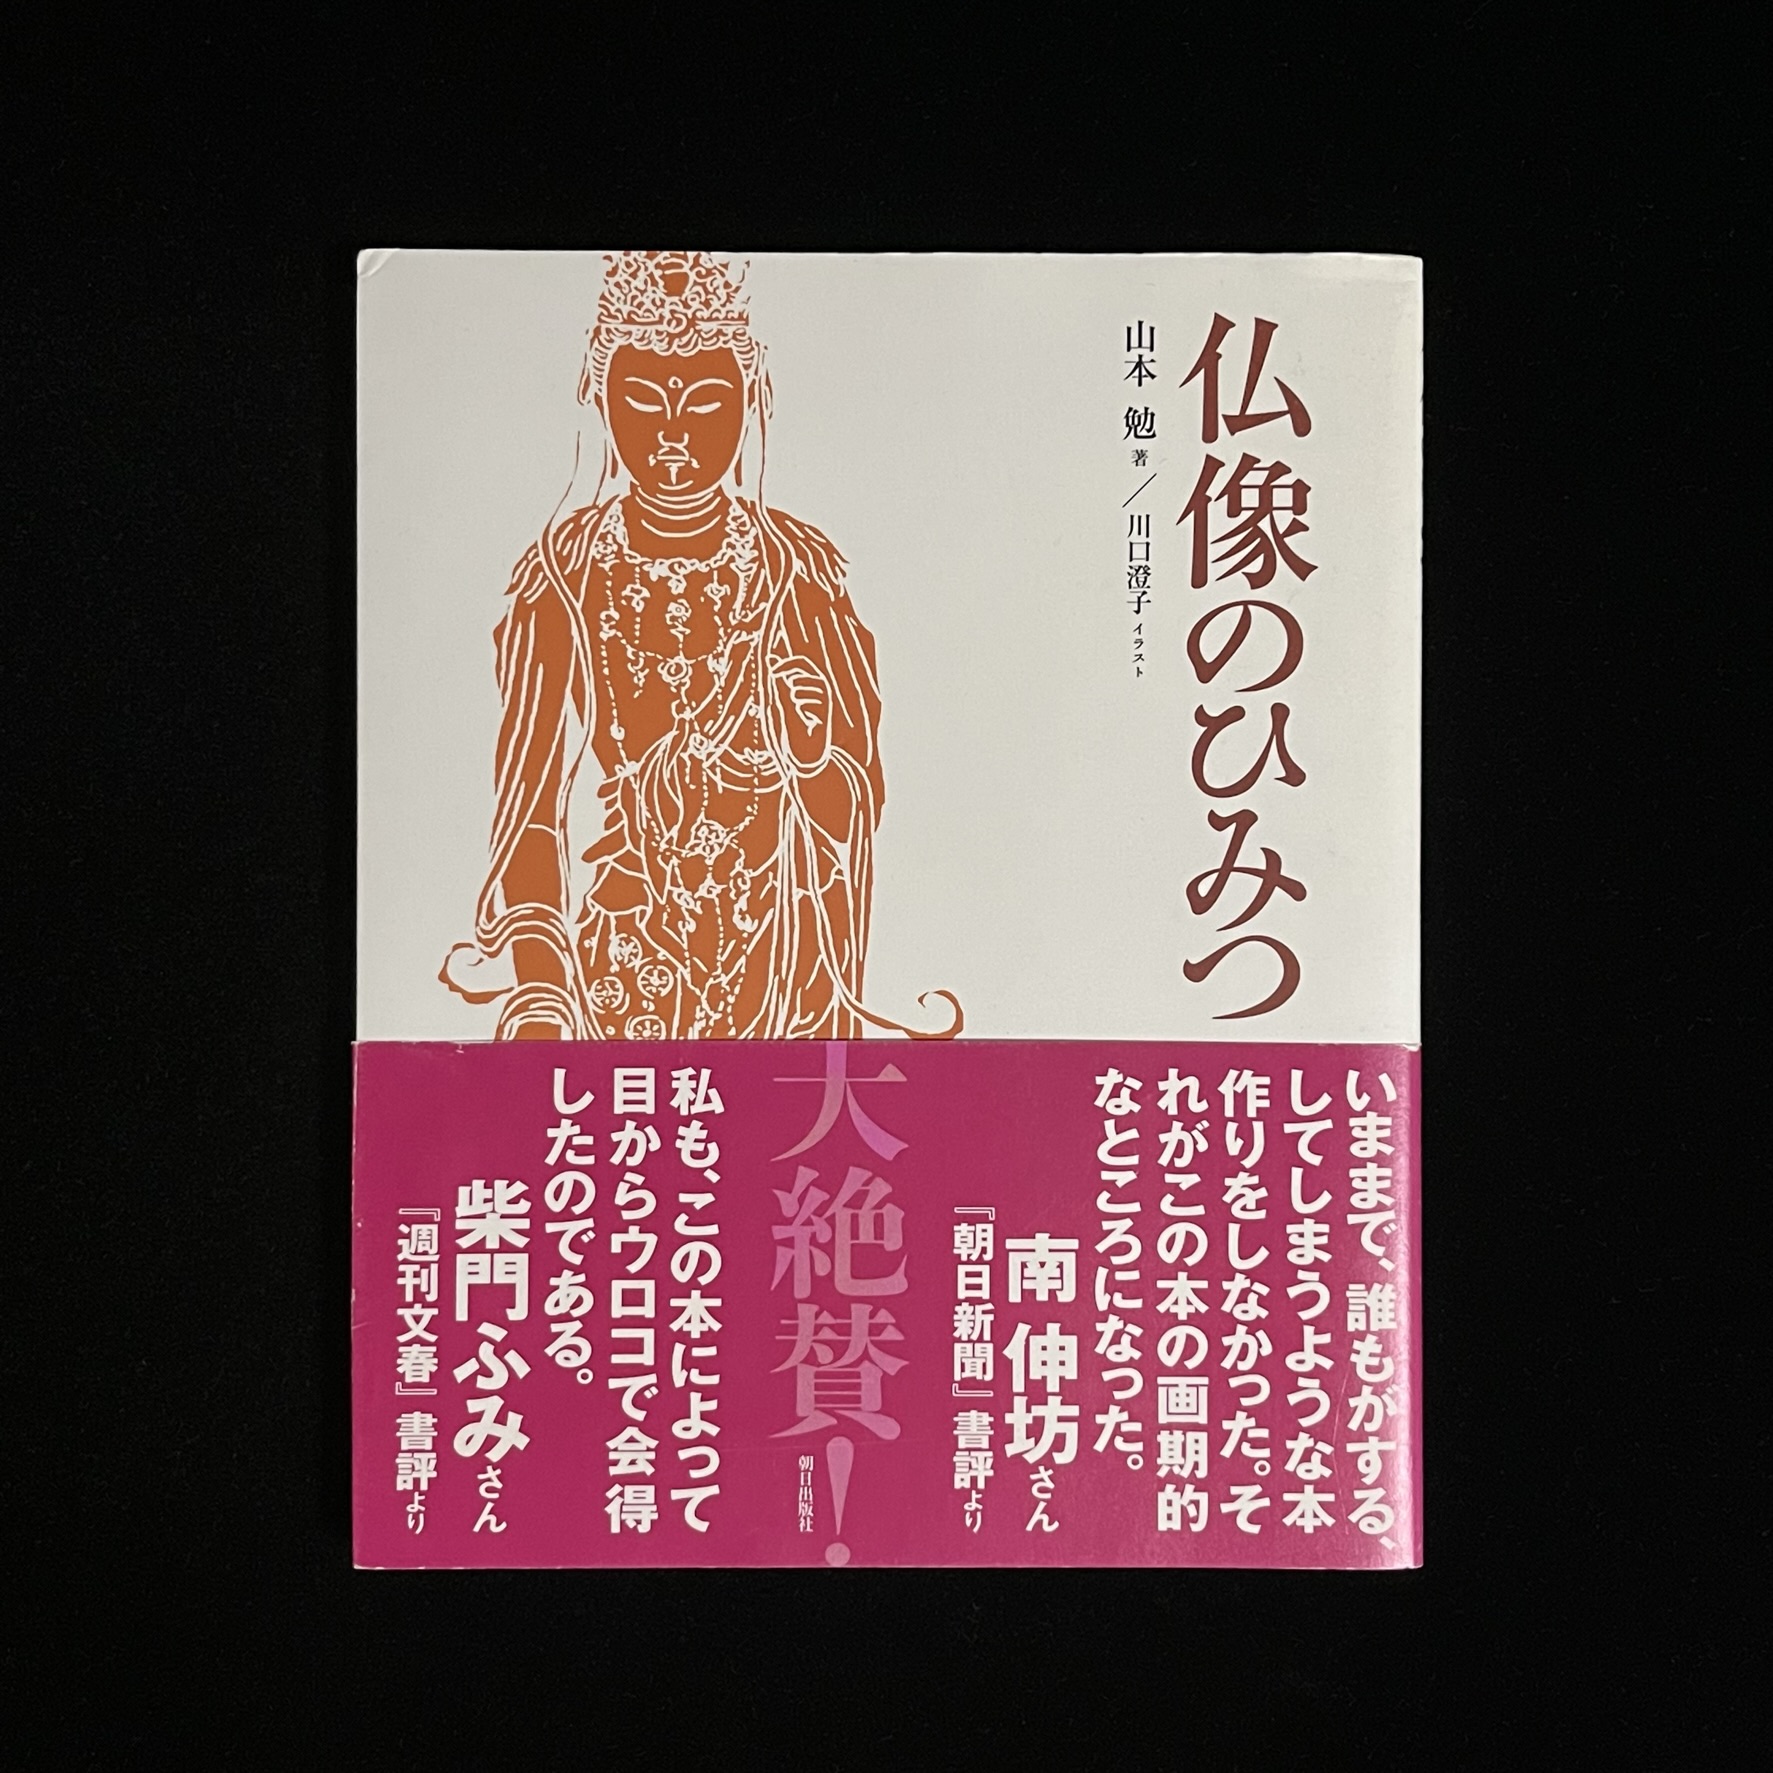 『仏像のひみつ』の本の表紙の写真。表紙には、東京国立博物館の菩薩立像のイラストが描かれています。